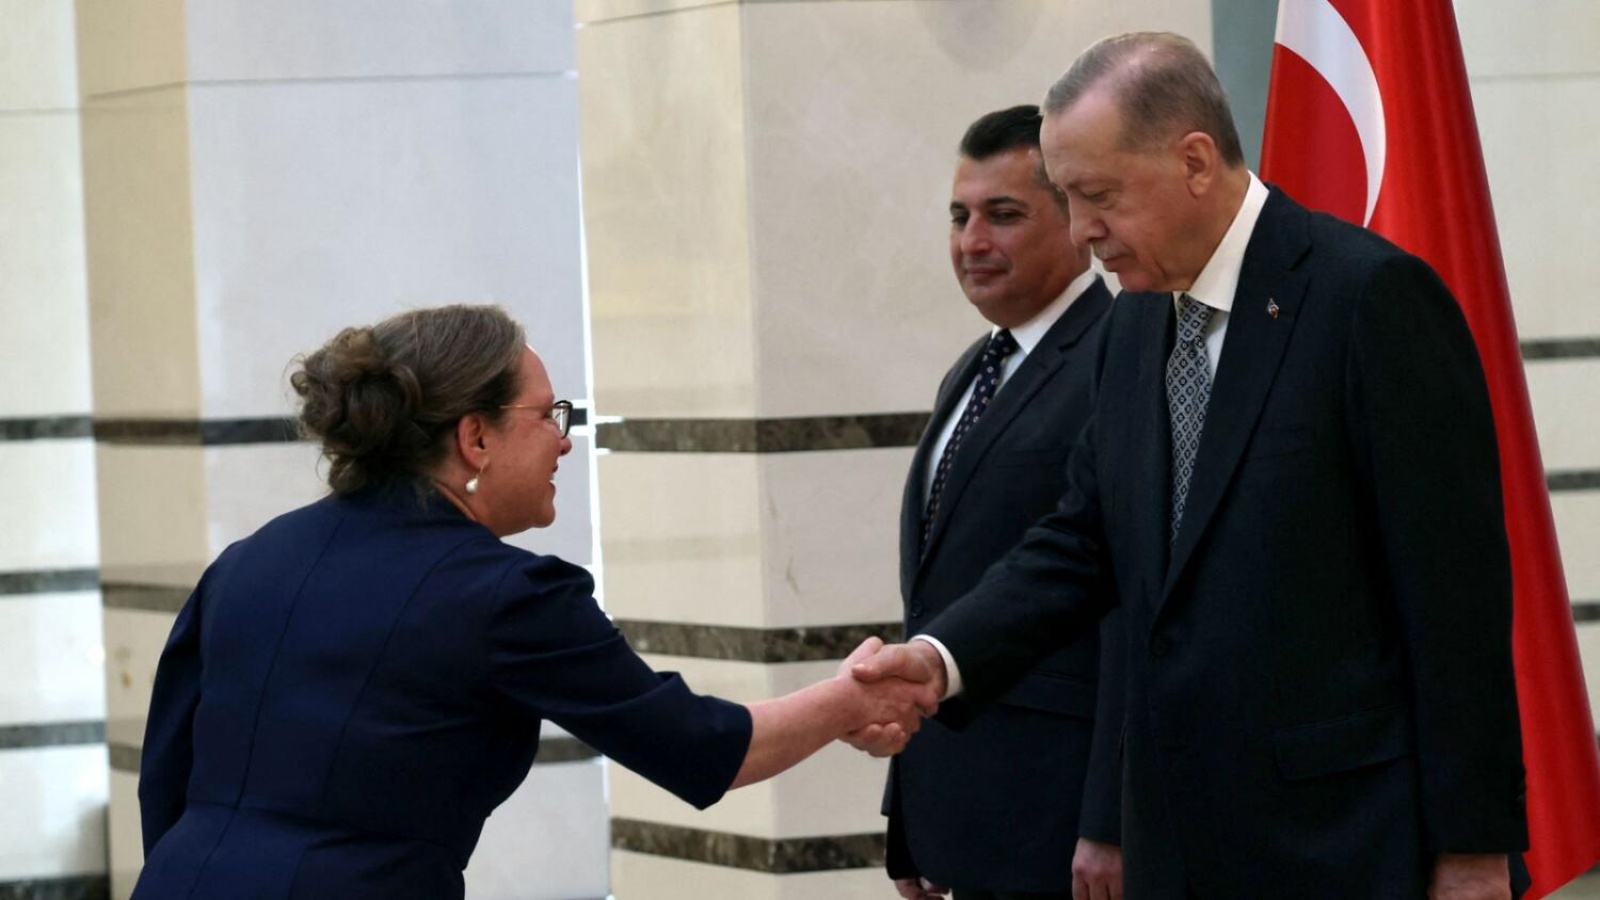 الرئيس التركي رجب طيب أردوغان (إلى اليمين) يصافح سفيرة إسرائيل في أنقرة إيريت ليليان (إلى اليسار) أثناء تسلمه خطاب الاعتماد، في المجمع الرئاسي في أنقرة يوم الثلاثاء 27 ديسمبر 2022